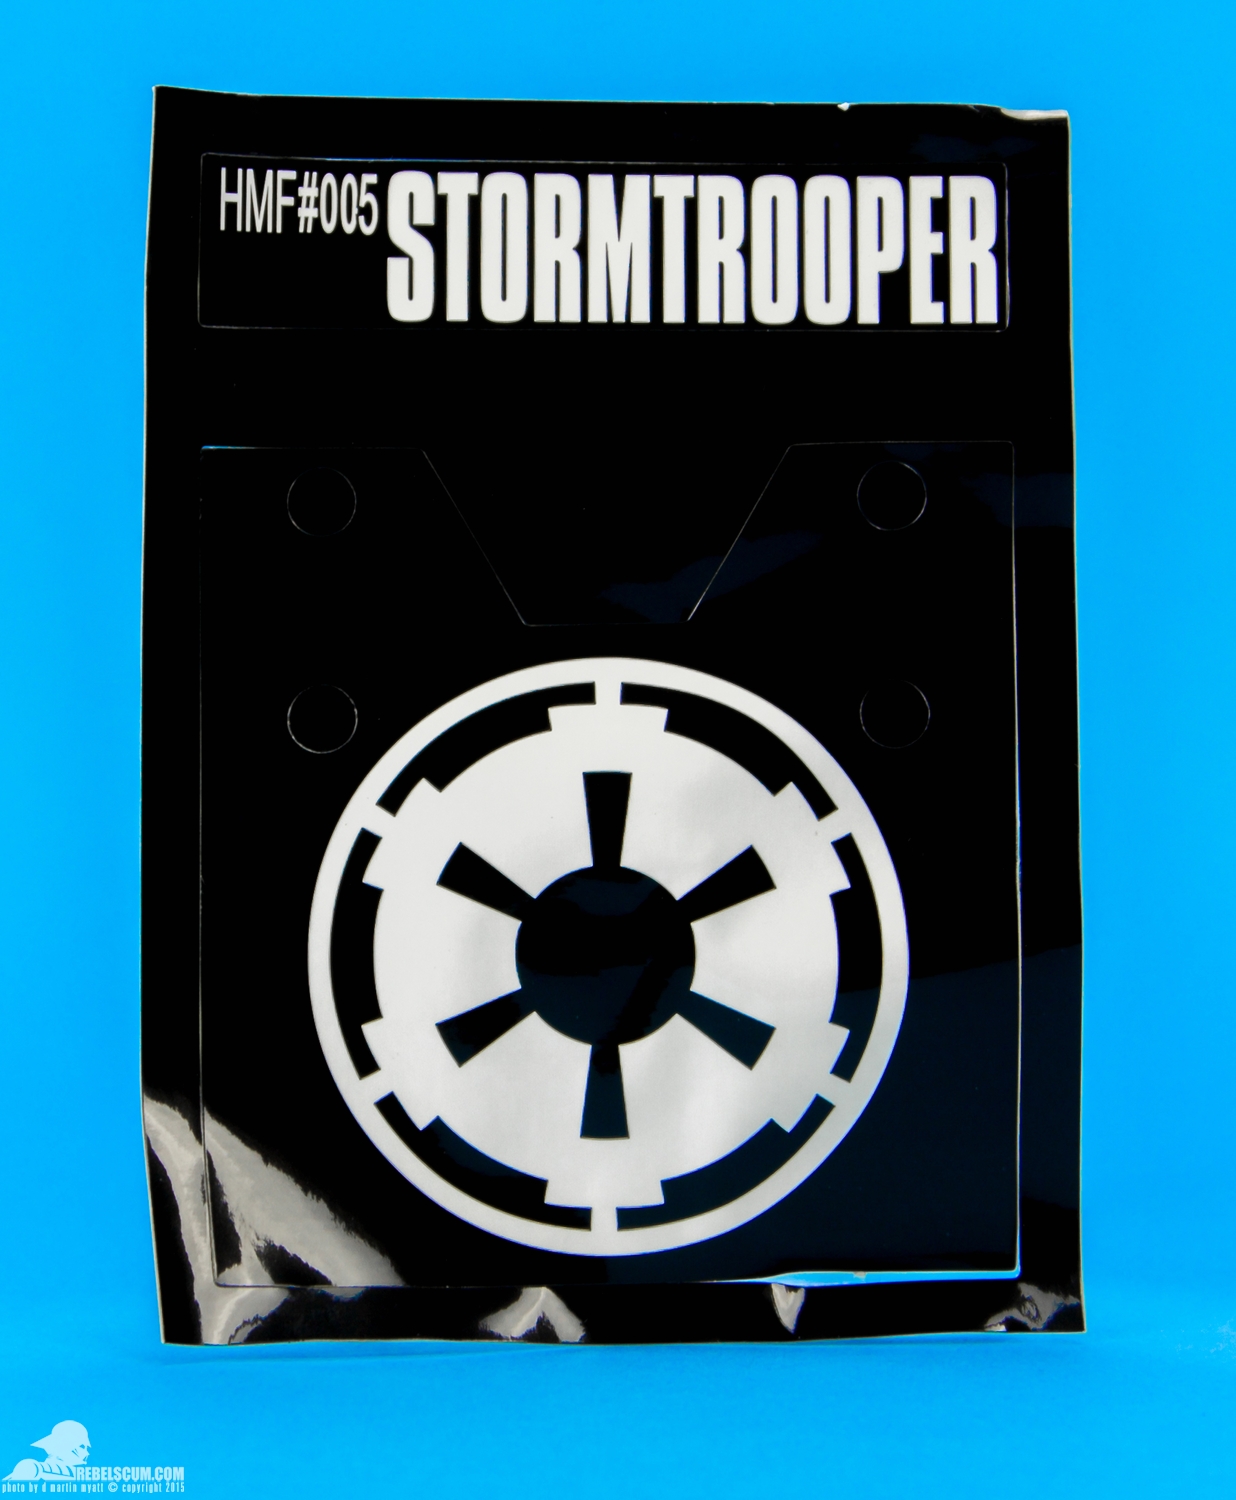 HMF005-Stormtrooper-Herocross-Hybrid-Metal-Figuration-Series-008.jpg